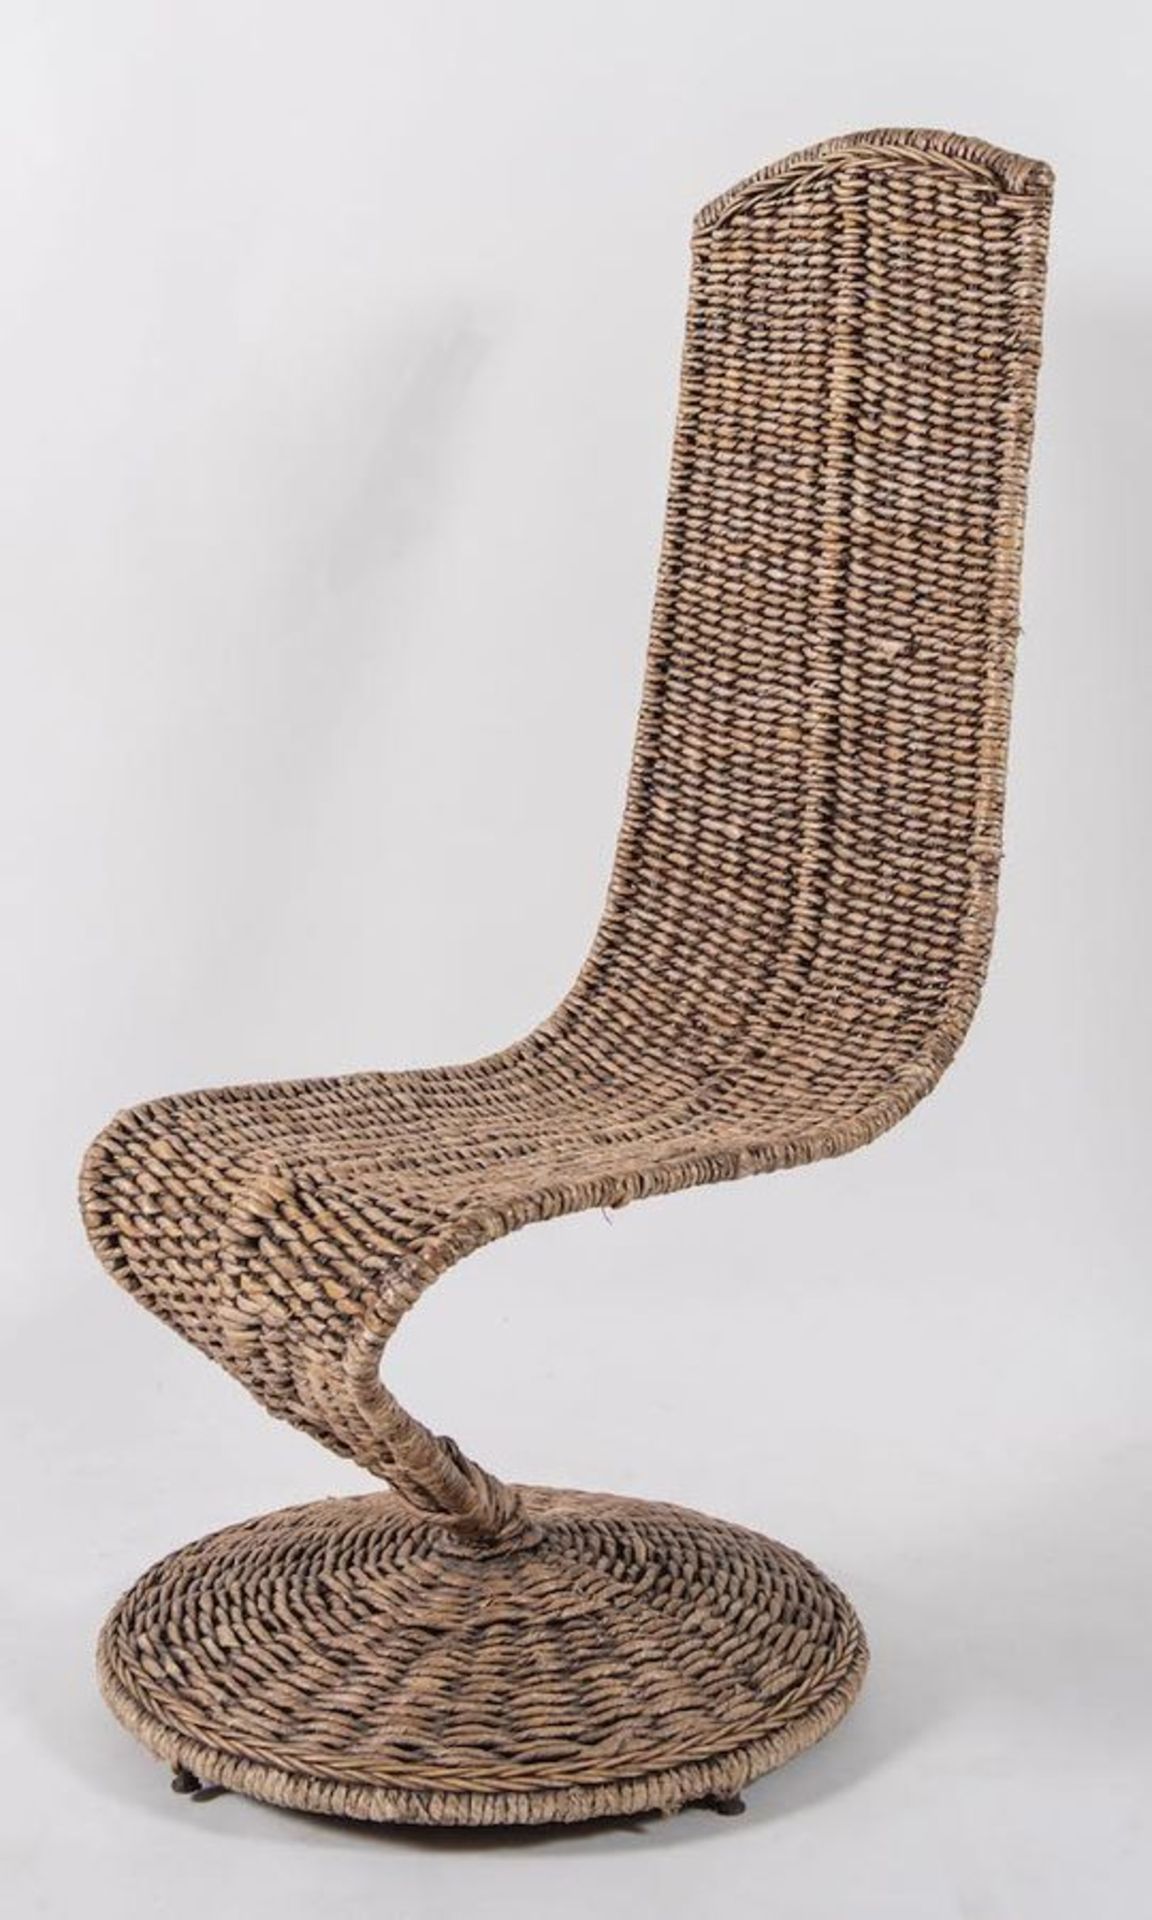 MARZIO CECCHI Poltrona con struttura in metallo e rivestimenti in corda intrecciata modello S chair.